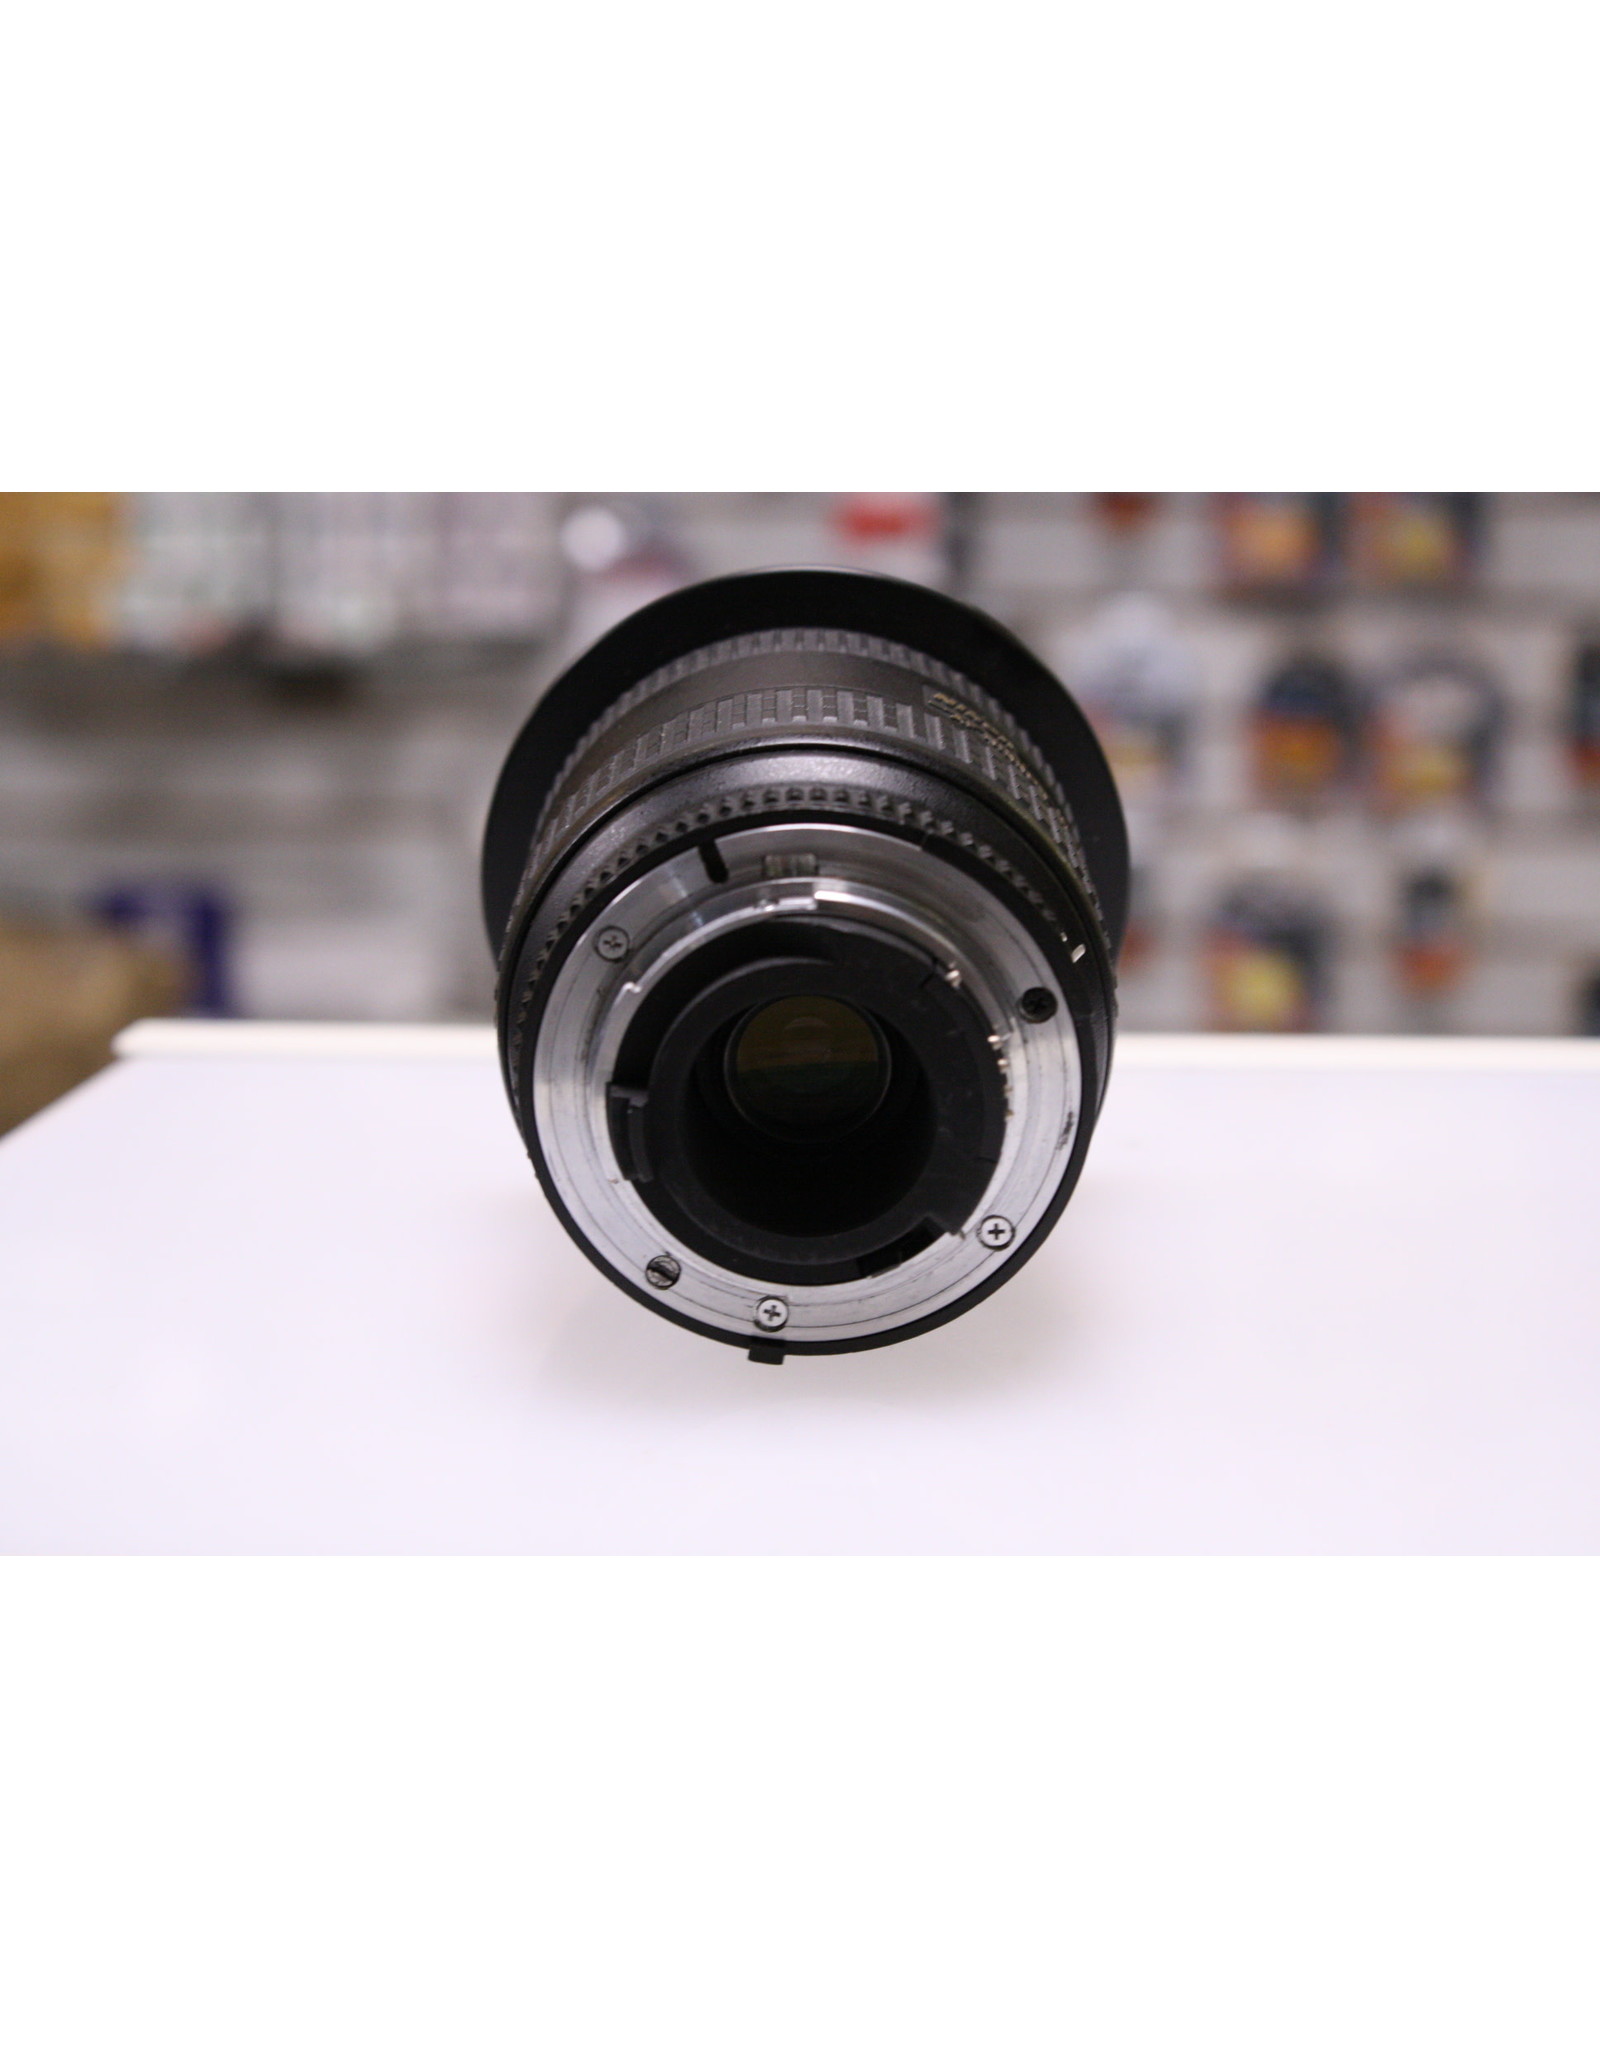 AF Nikkor 18-35 f3.5-4.5D - レンズ(ズーム)